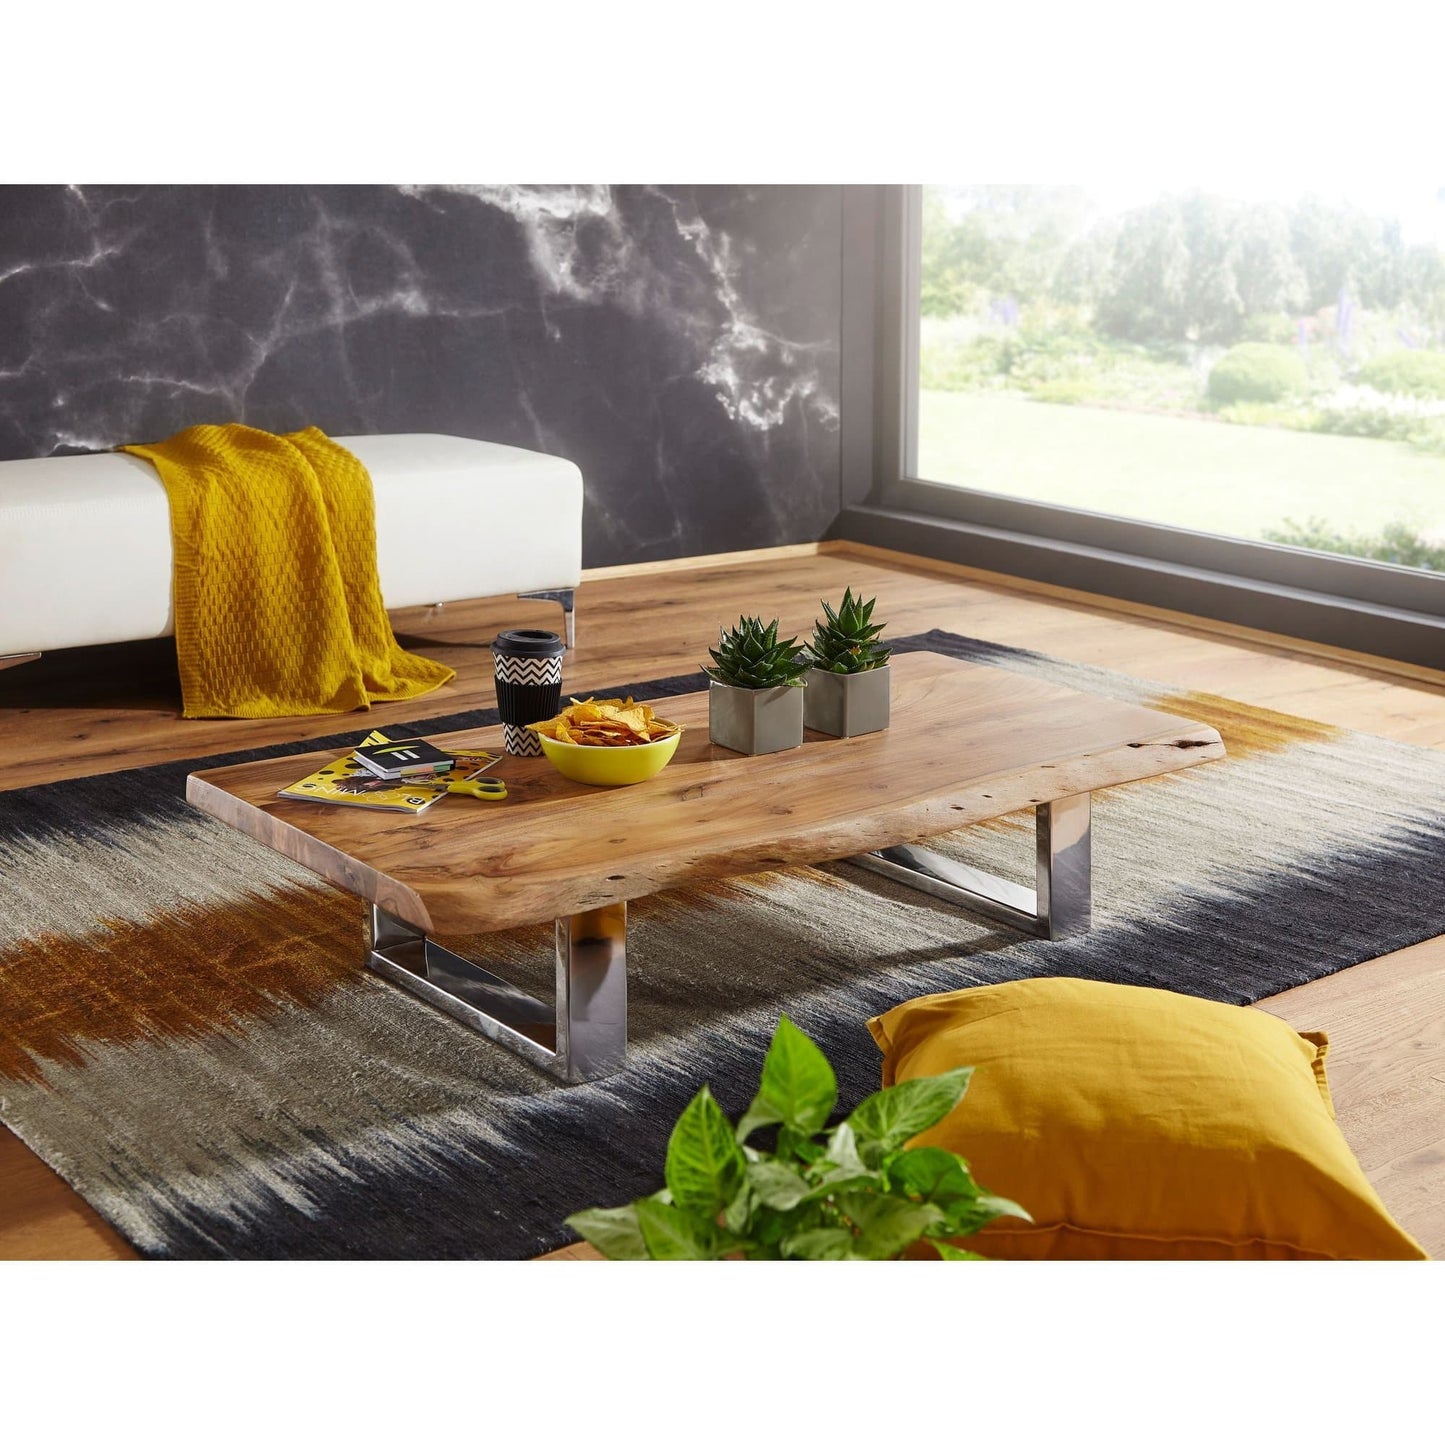 Table basse moderne en acacia Montclare de Nancy - Table d'appoint - Table - Tables basses - Table